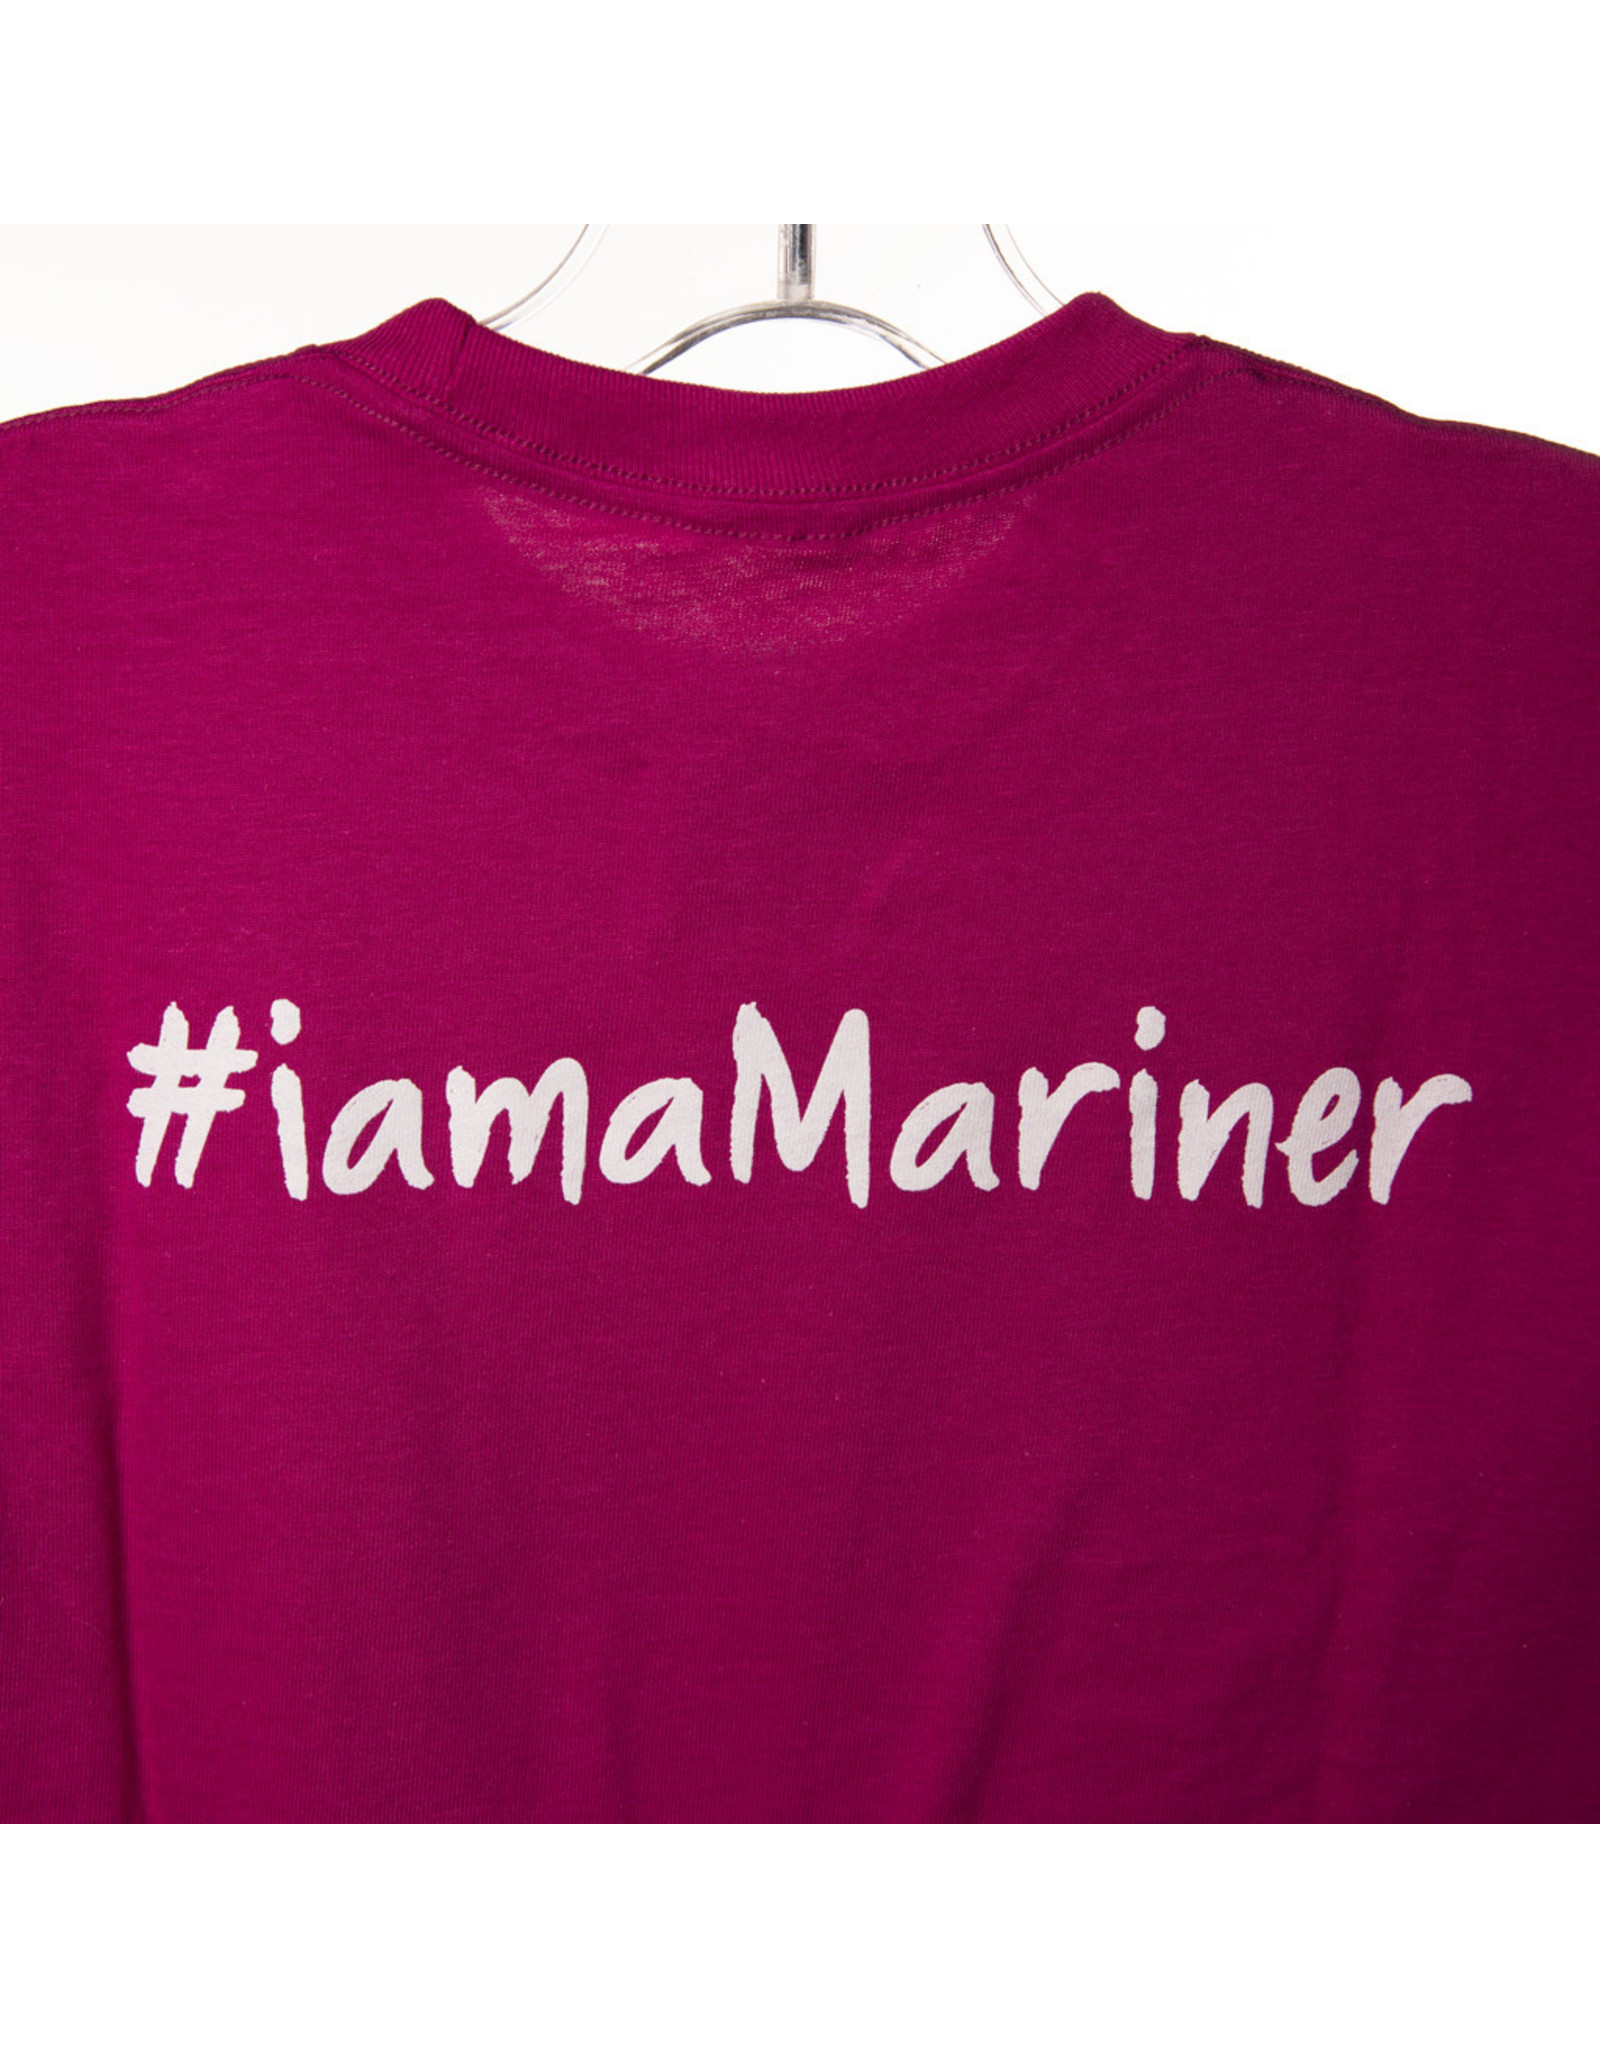 pink mariners shirt